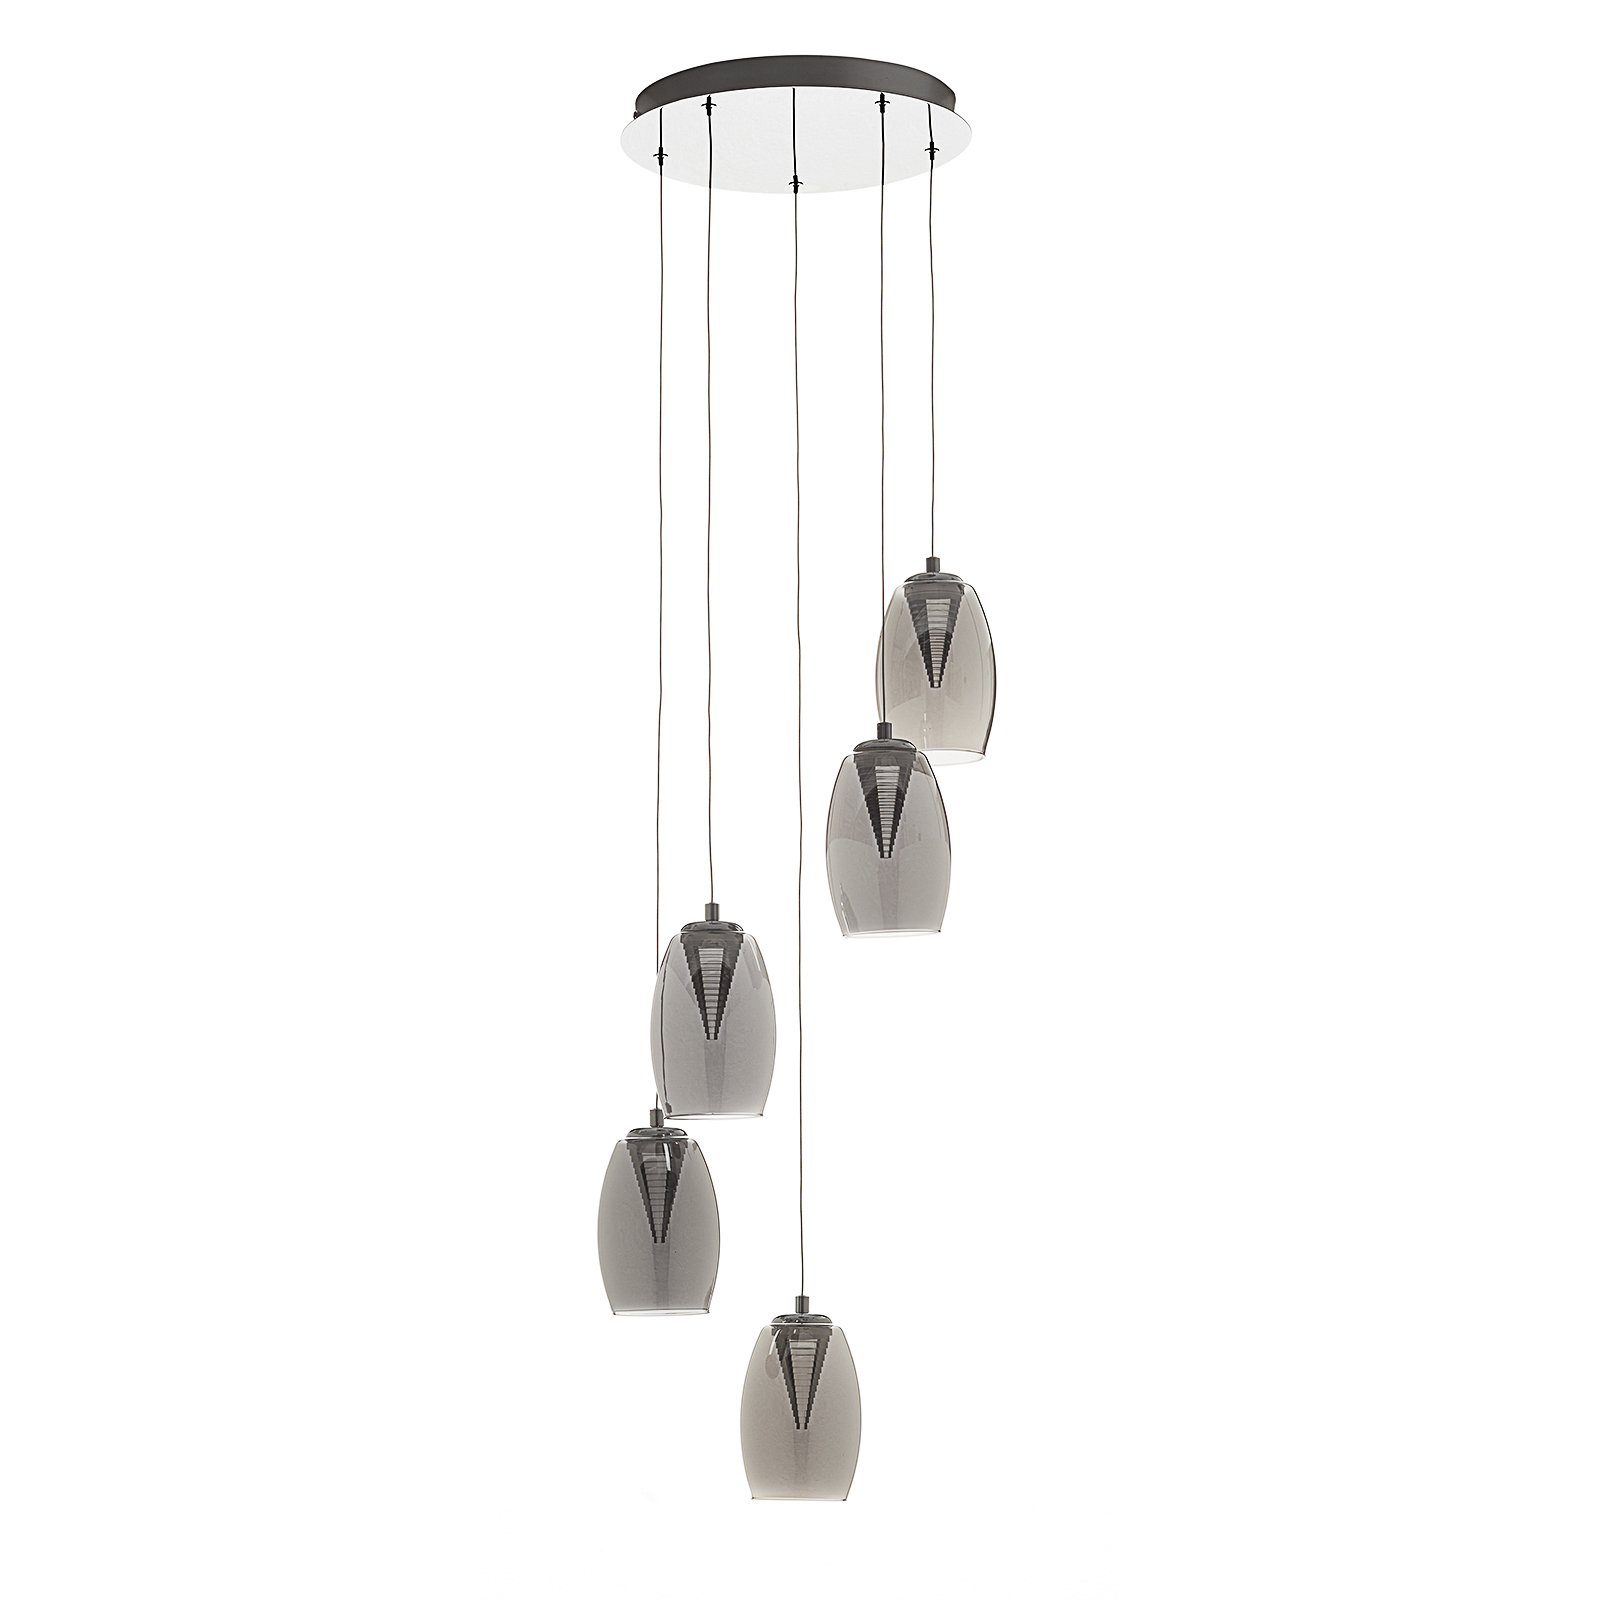 Metropolis LED hanging light smoked glass 5-bulb